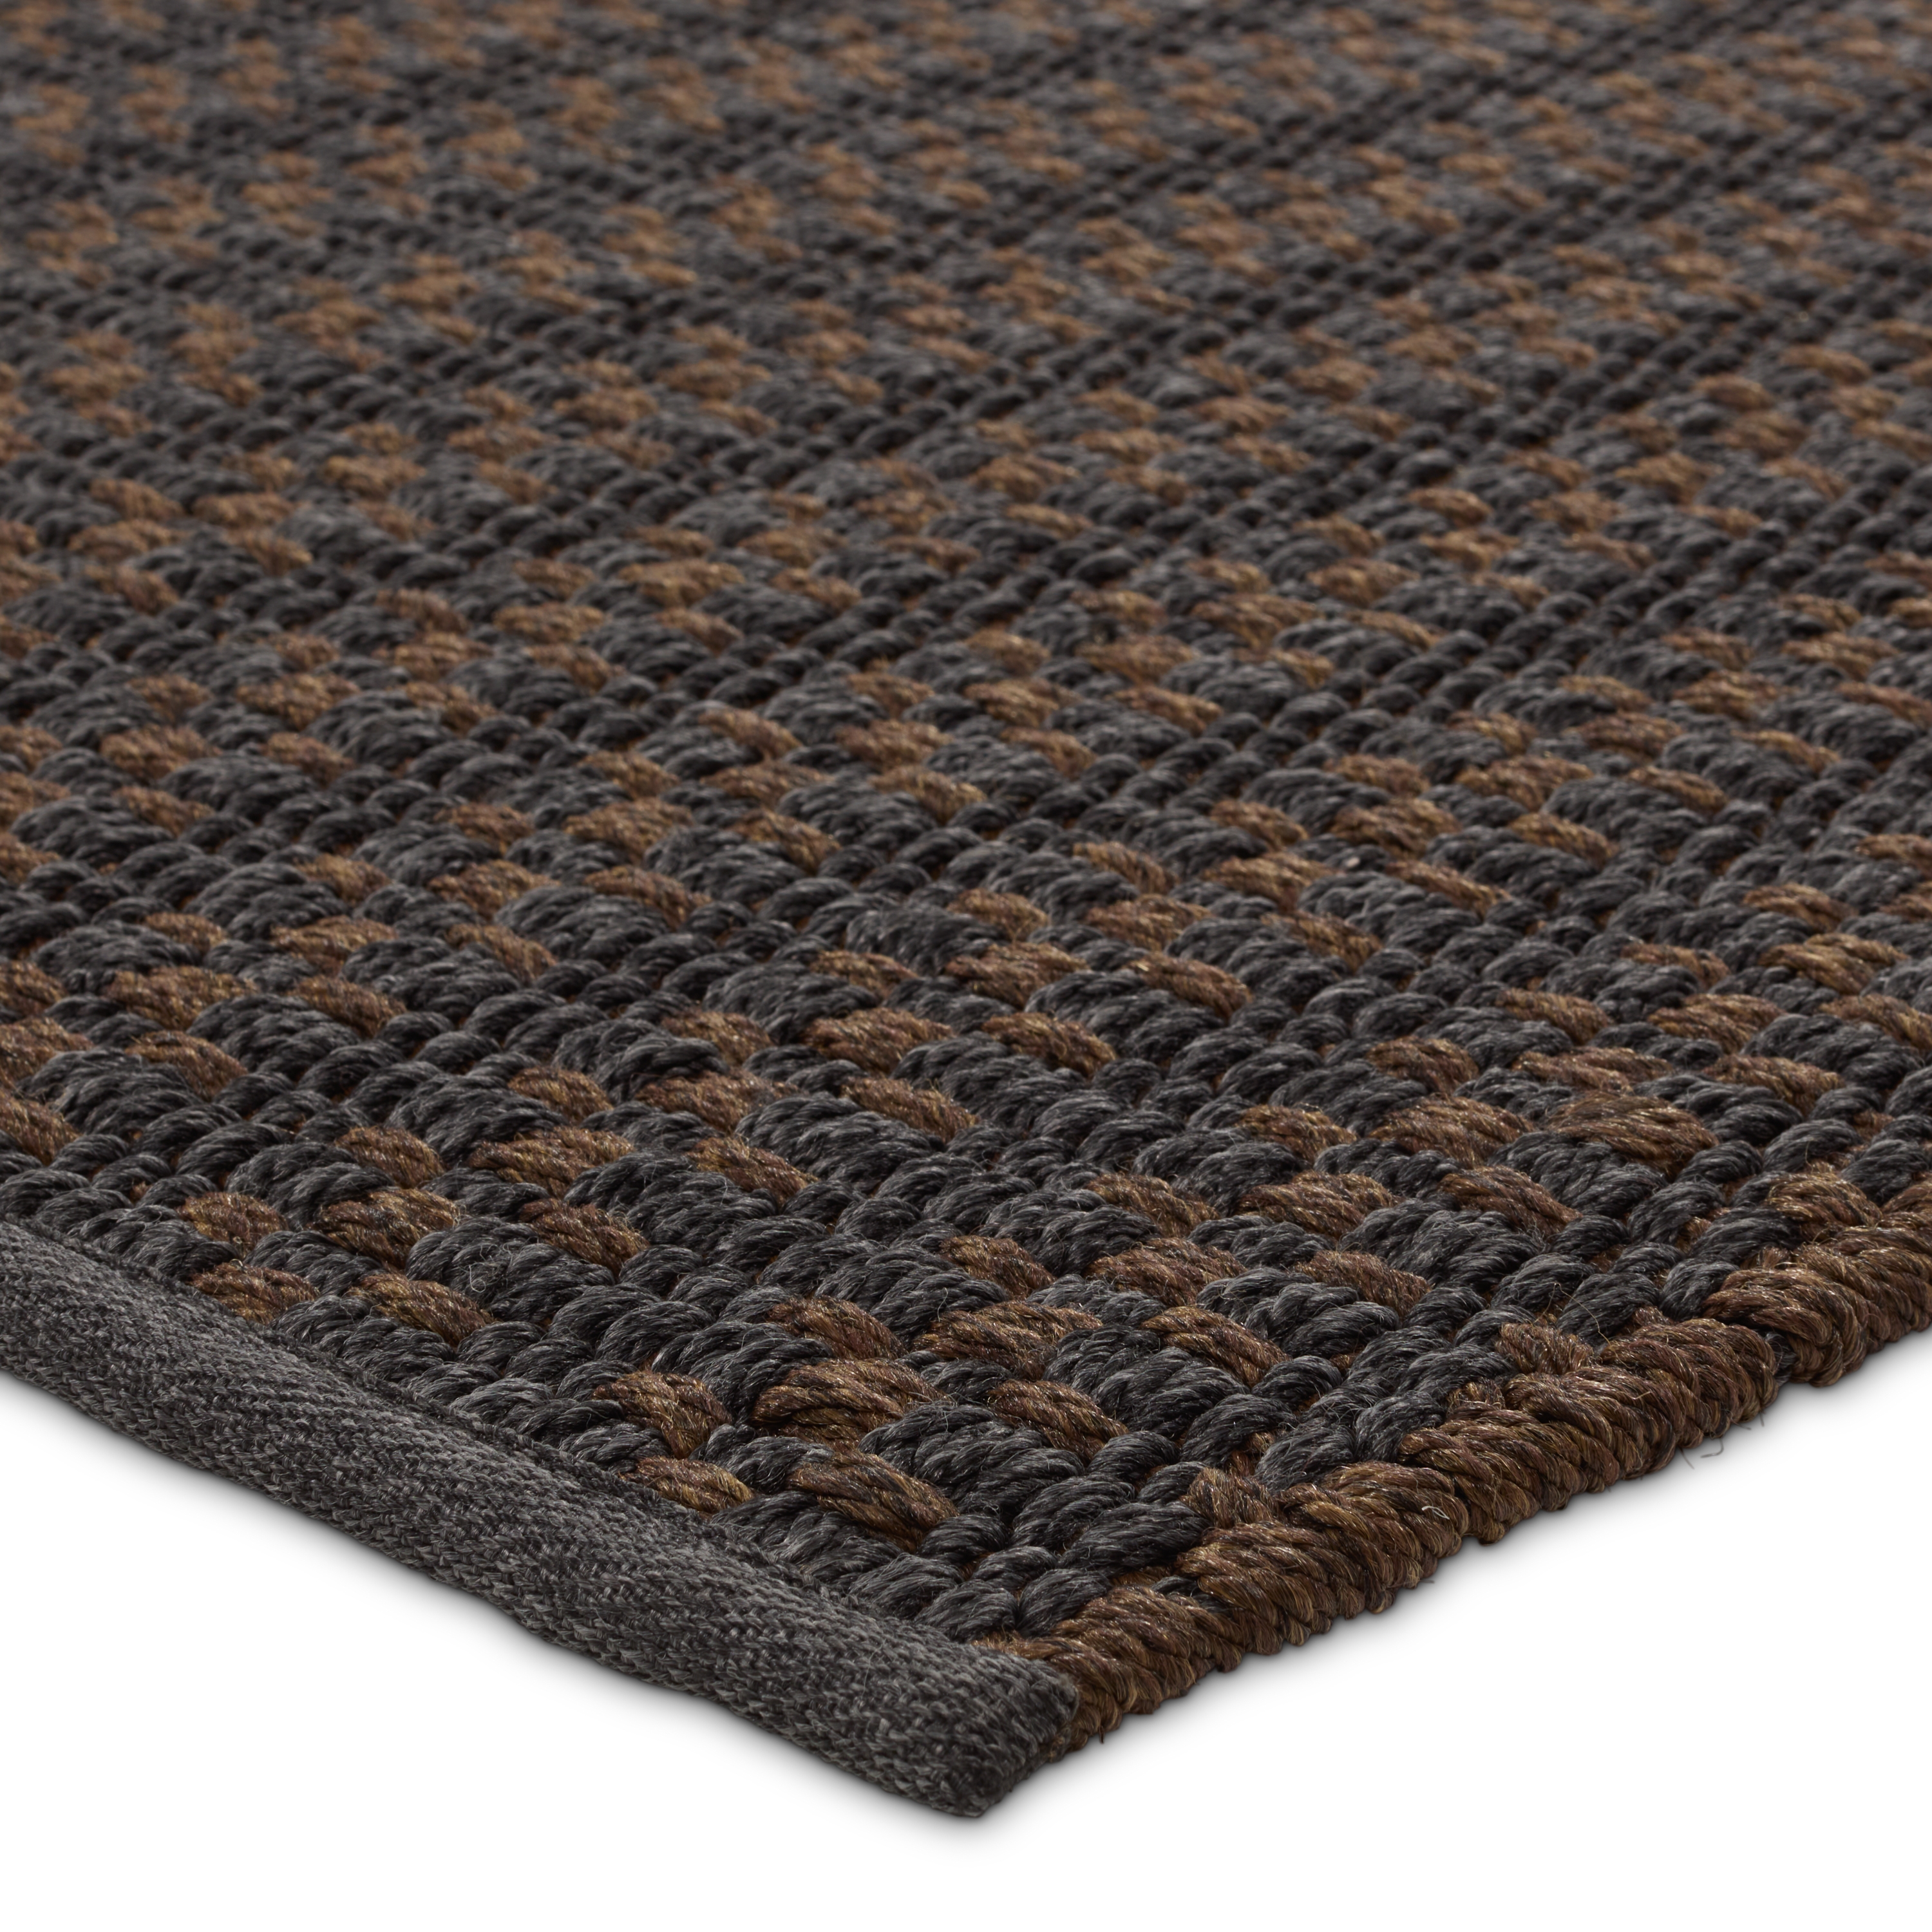 Elmas Handmade Indoor/Outdoor Striped Gray/Brown Runner Rug (3'X8') - Image 1